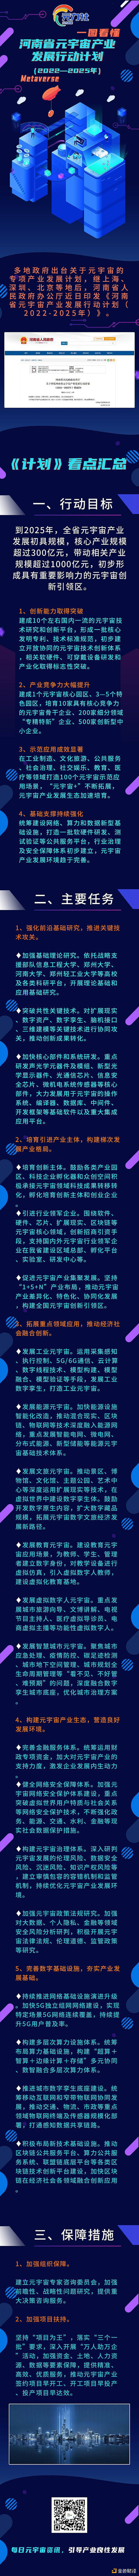 抢占元宇宙赛道：河南省发布最新行动计划